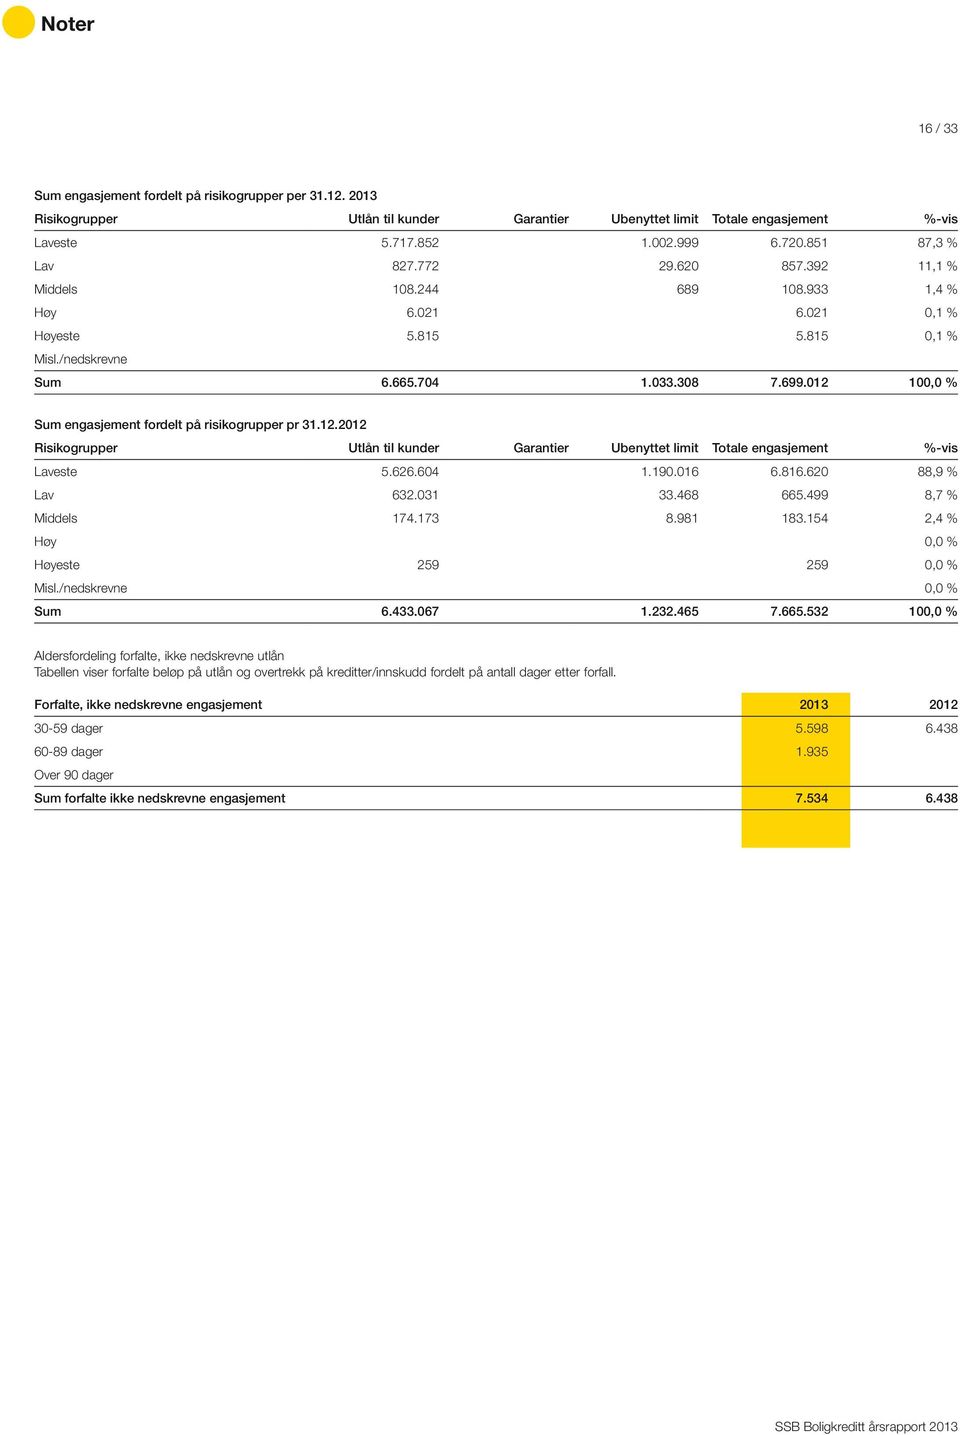 012 100,0 % Sum engasjement fordelt på risikogrupper pr 31.12.2012 Risikogrupper Utlån til kunder Garantier Ubenyttet limit Totale engasjement %-vis Laveste 5.626.604 1.190.016 6.816.